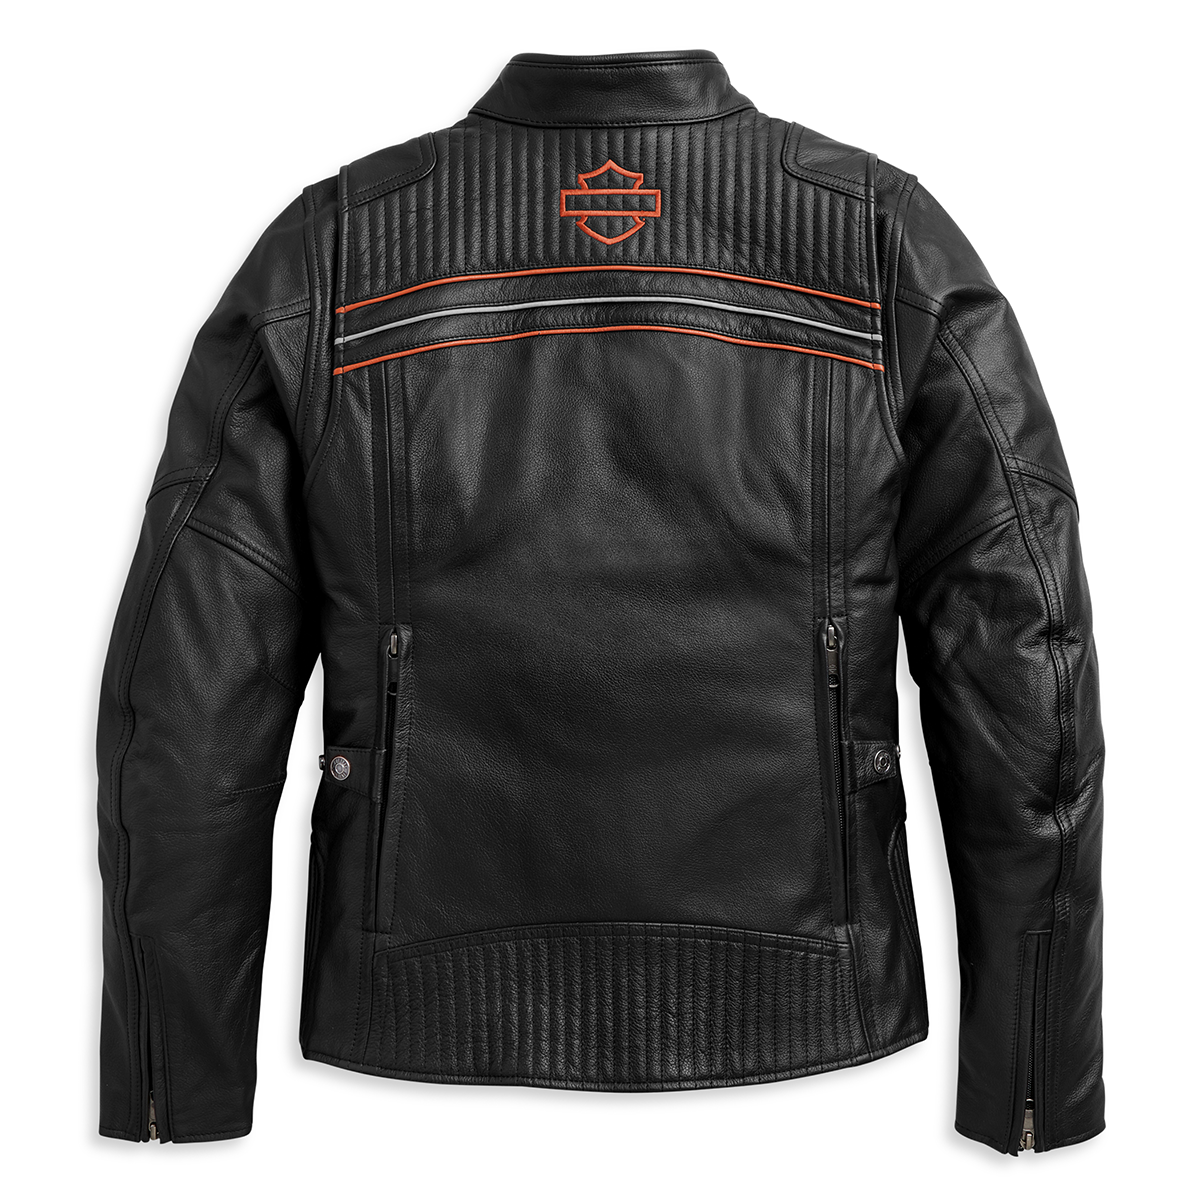 Harley-Davidson I-94 Women's Leather Jacket - 97017-21VW